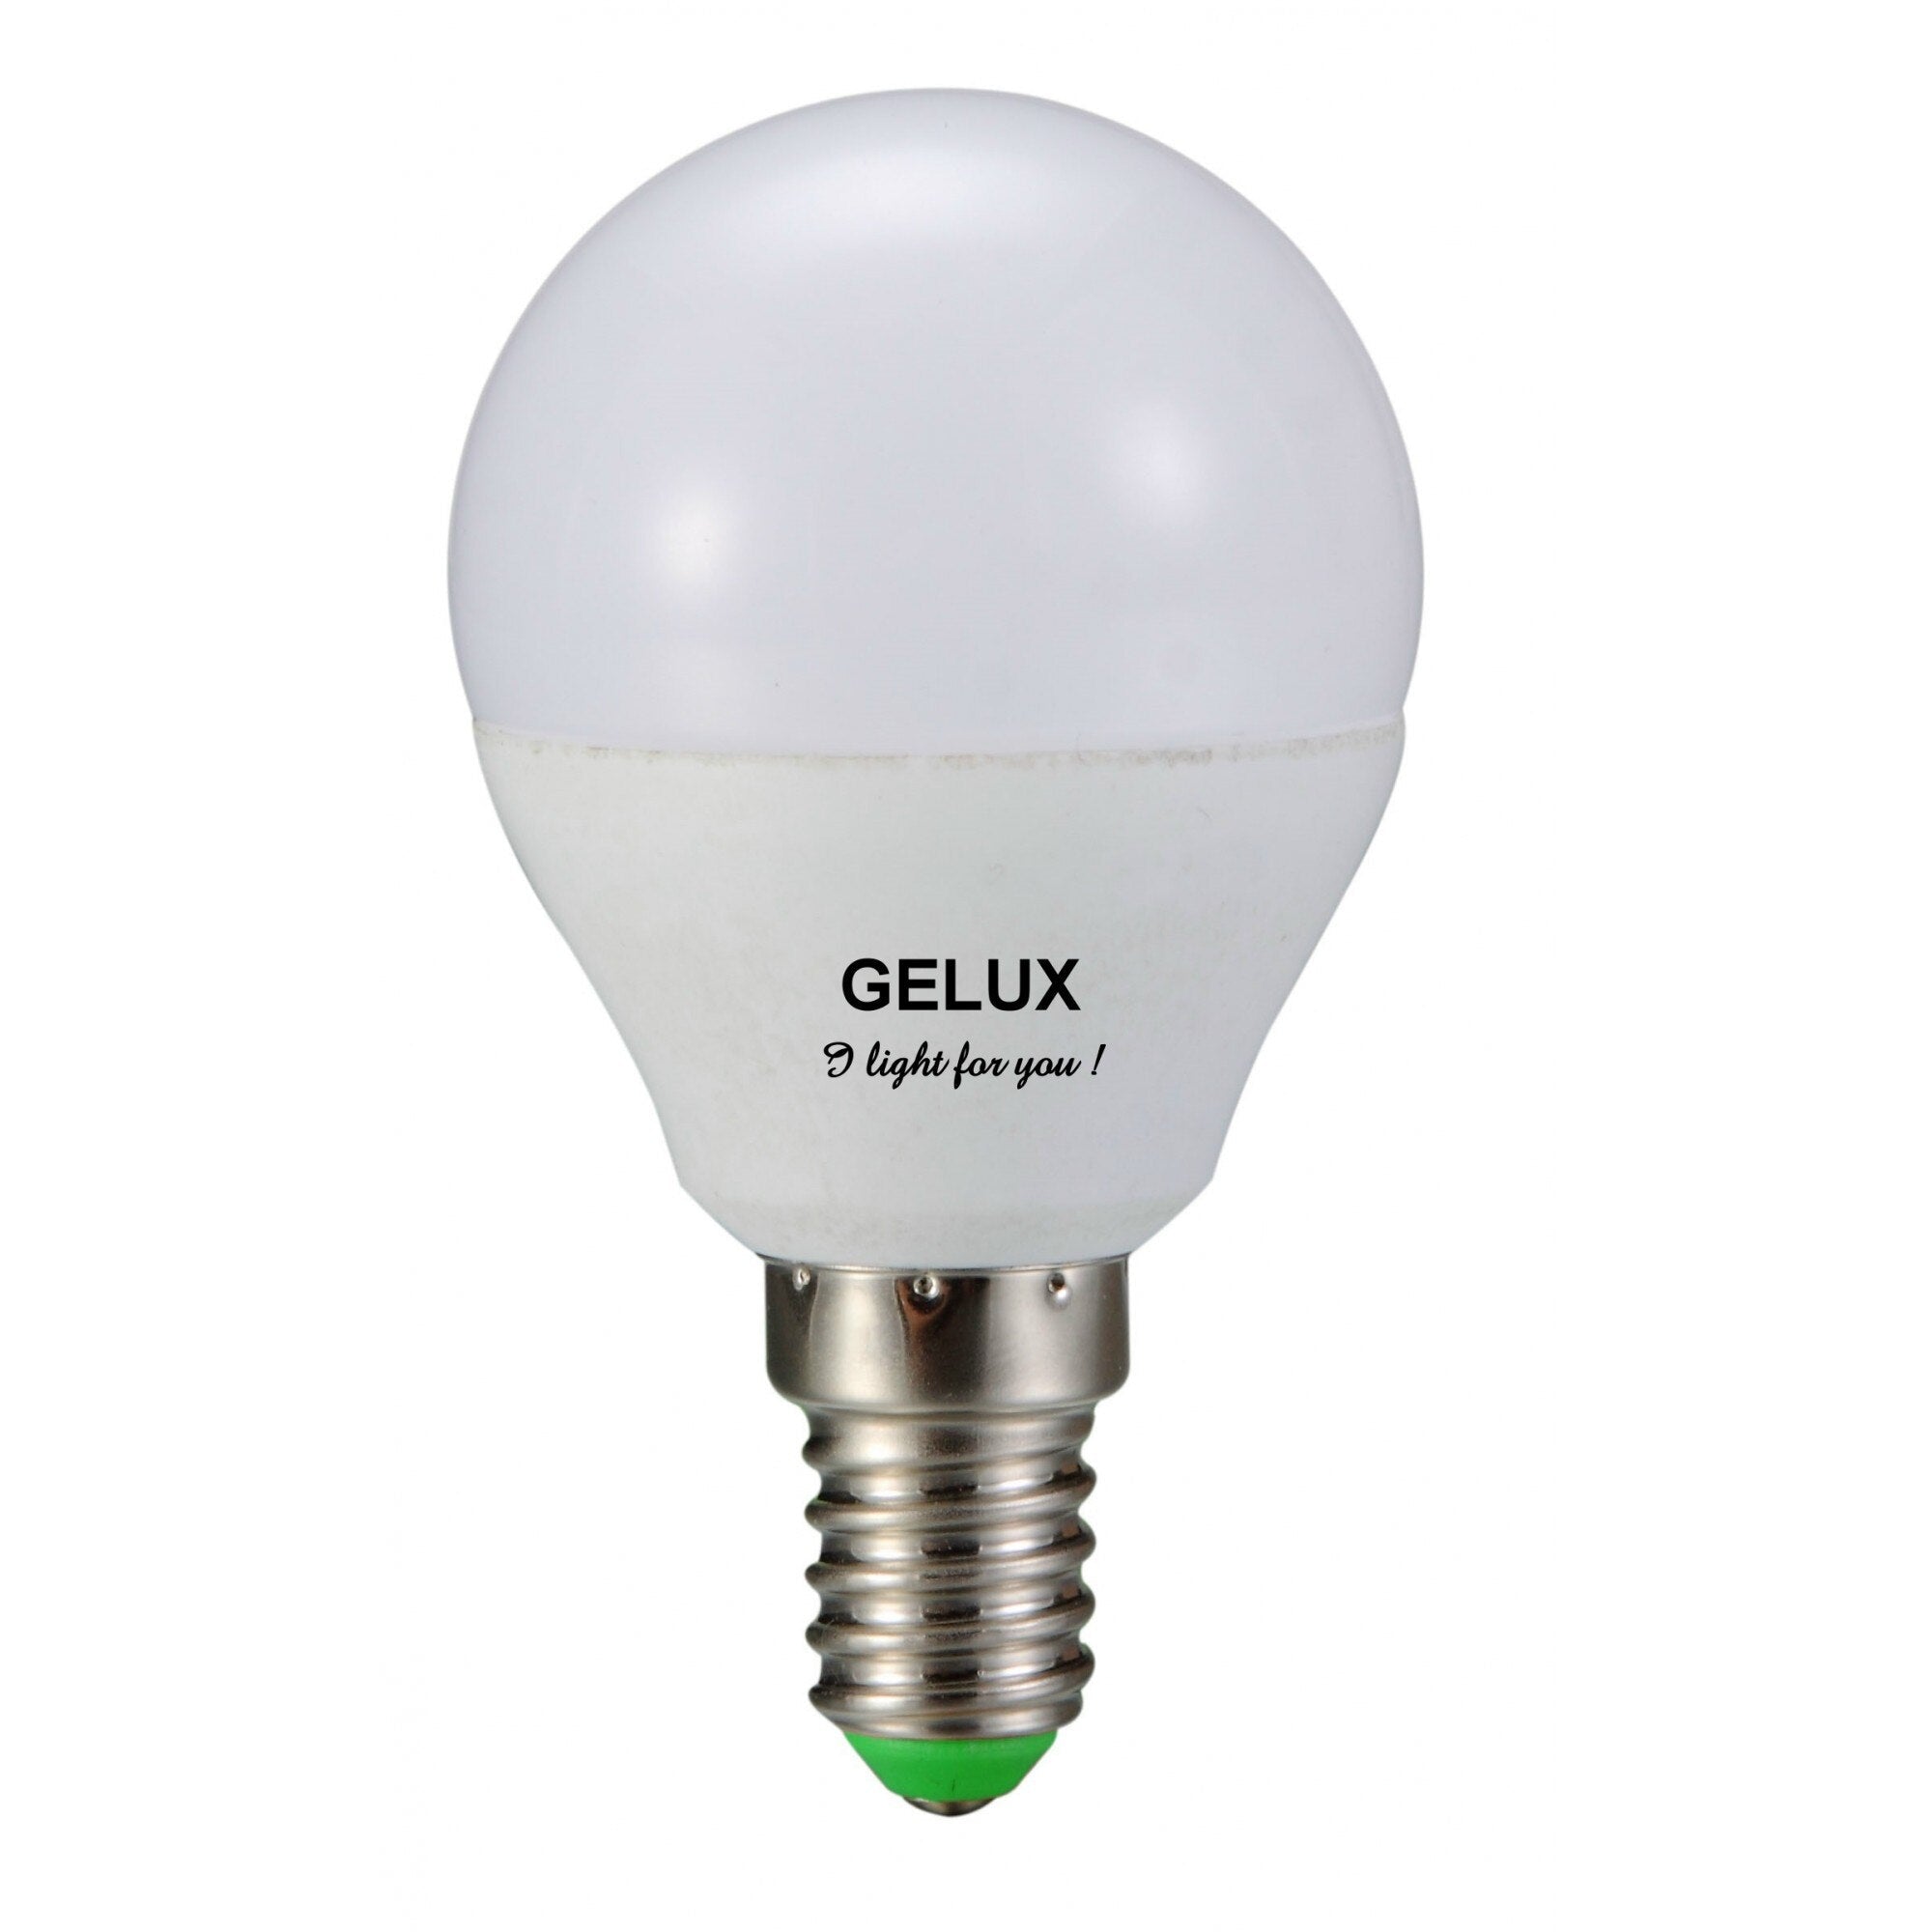 Bec LED Sferic 5W E27 ECOLED, echivalent 40W lumina rece, Gelux